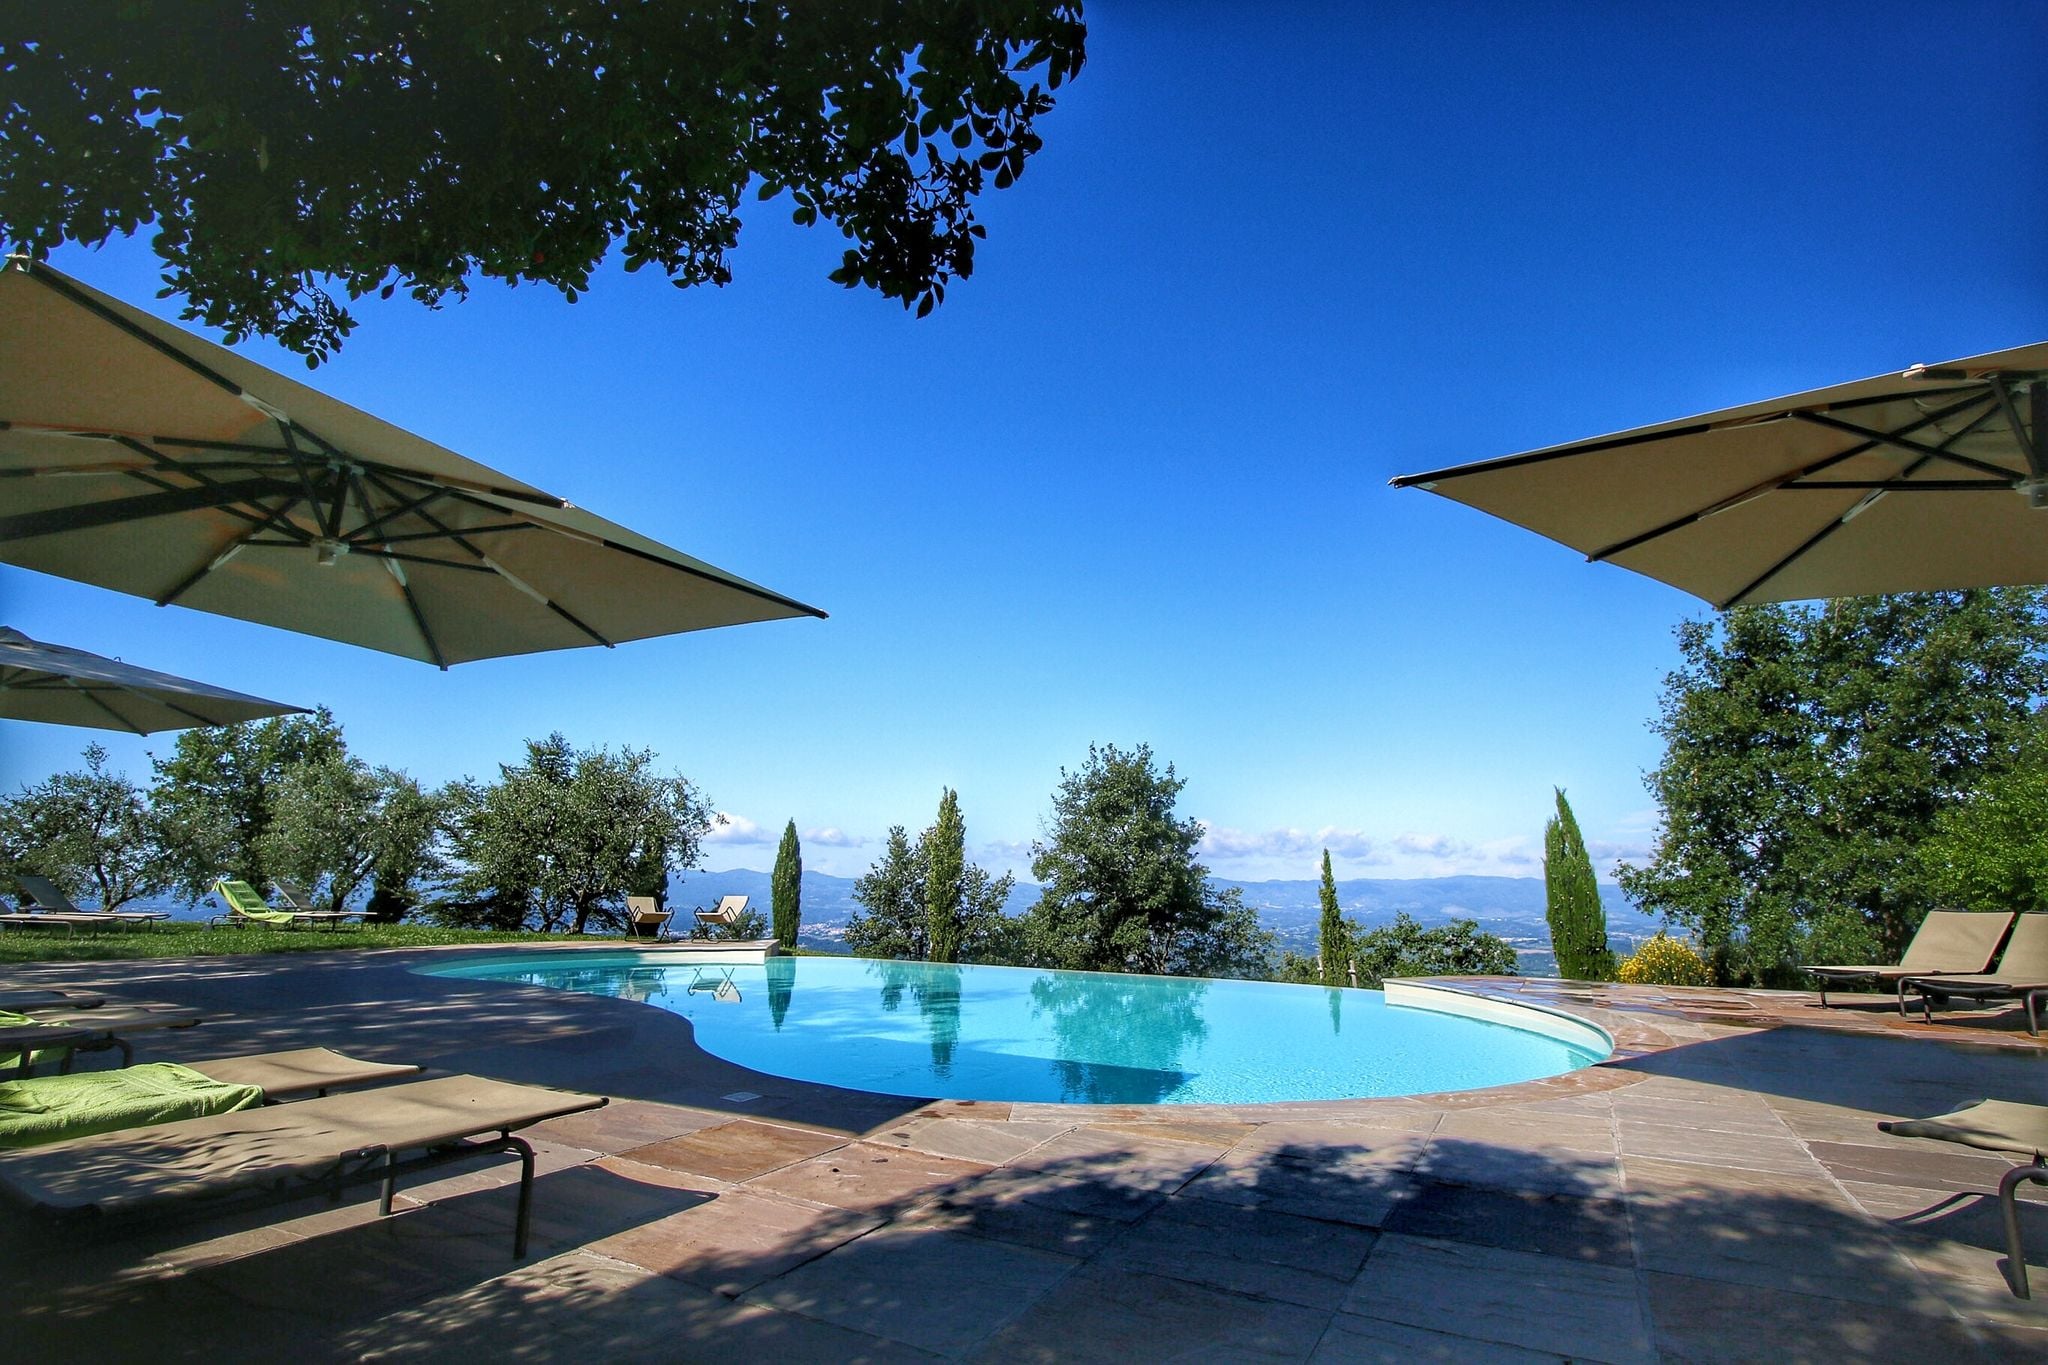 Vakantiewoning met heerlijk zwembad in de heuvels van het Valdarno Arentino